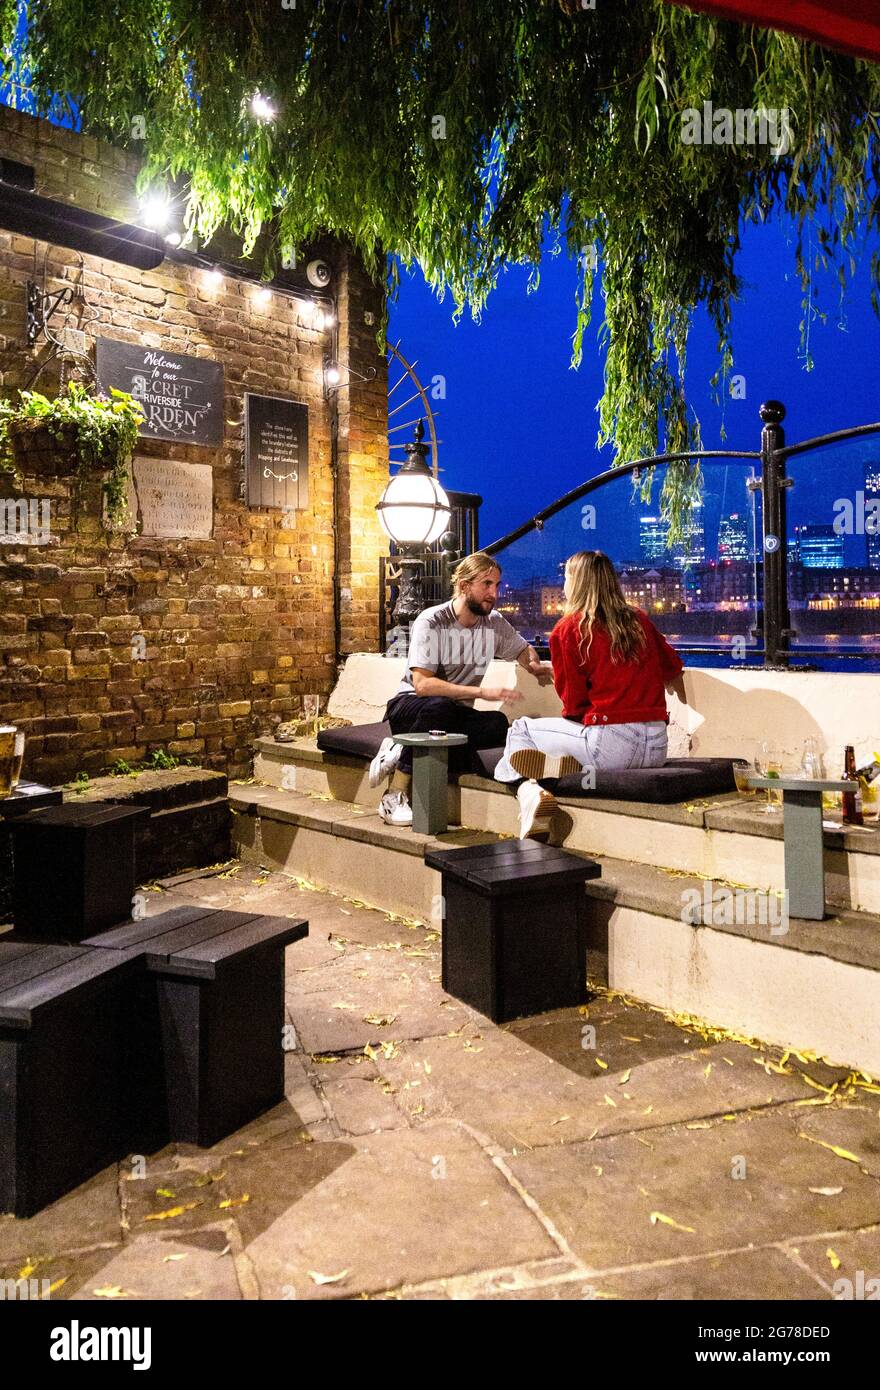 Ehepaar sitzt im Garten des alten historischen Prospect of Whitby Pub in Wapping mit Blick auf die Themse, London, Großbritannien Stockfoto